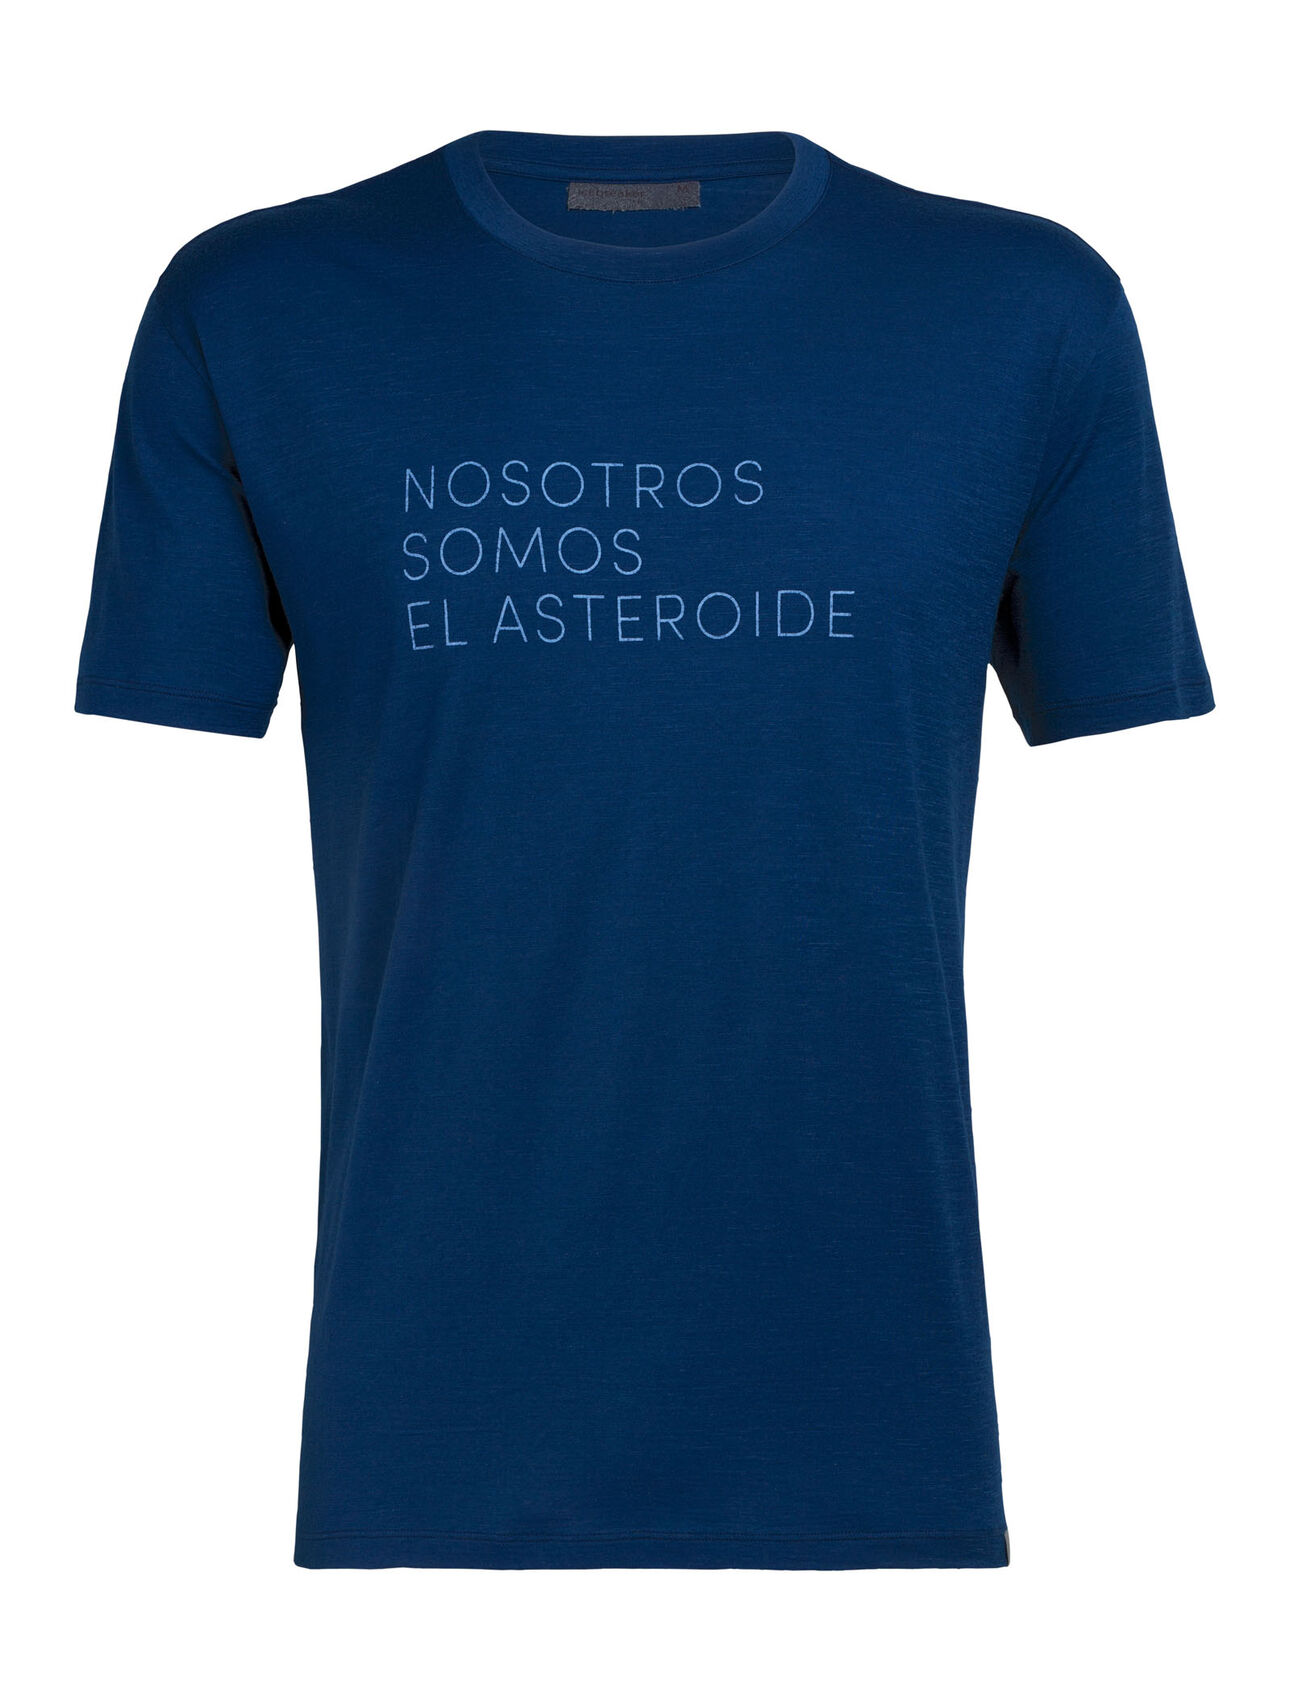 Nature Dye Tech Lite Short Sleeve Crewe t-shirt i merino Asteroid Spanish